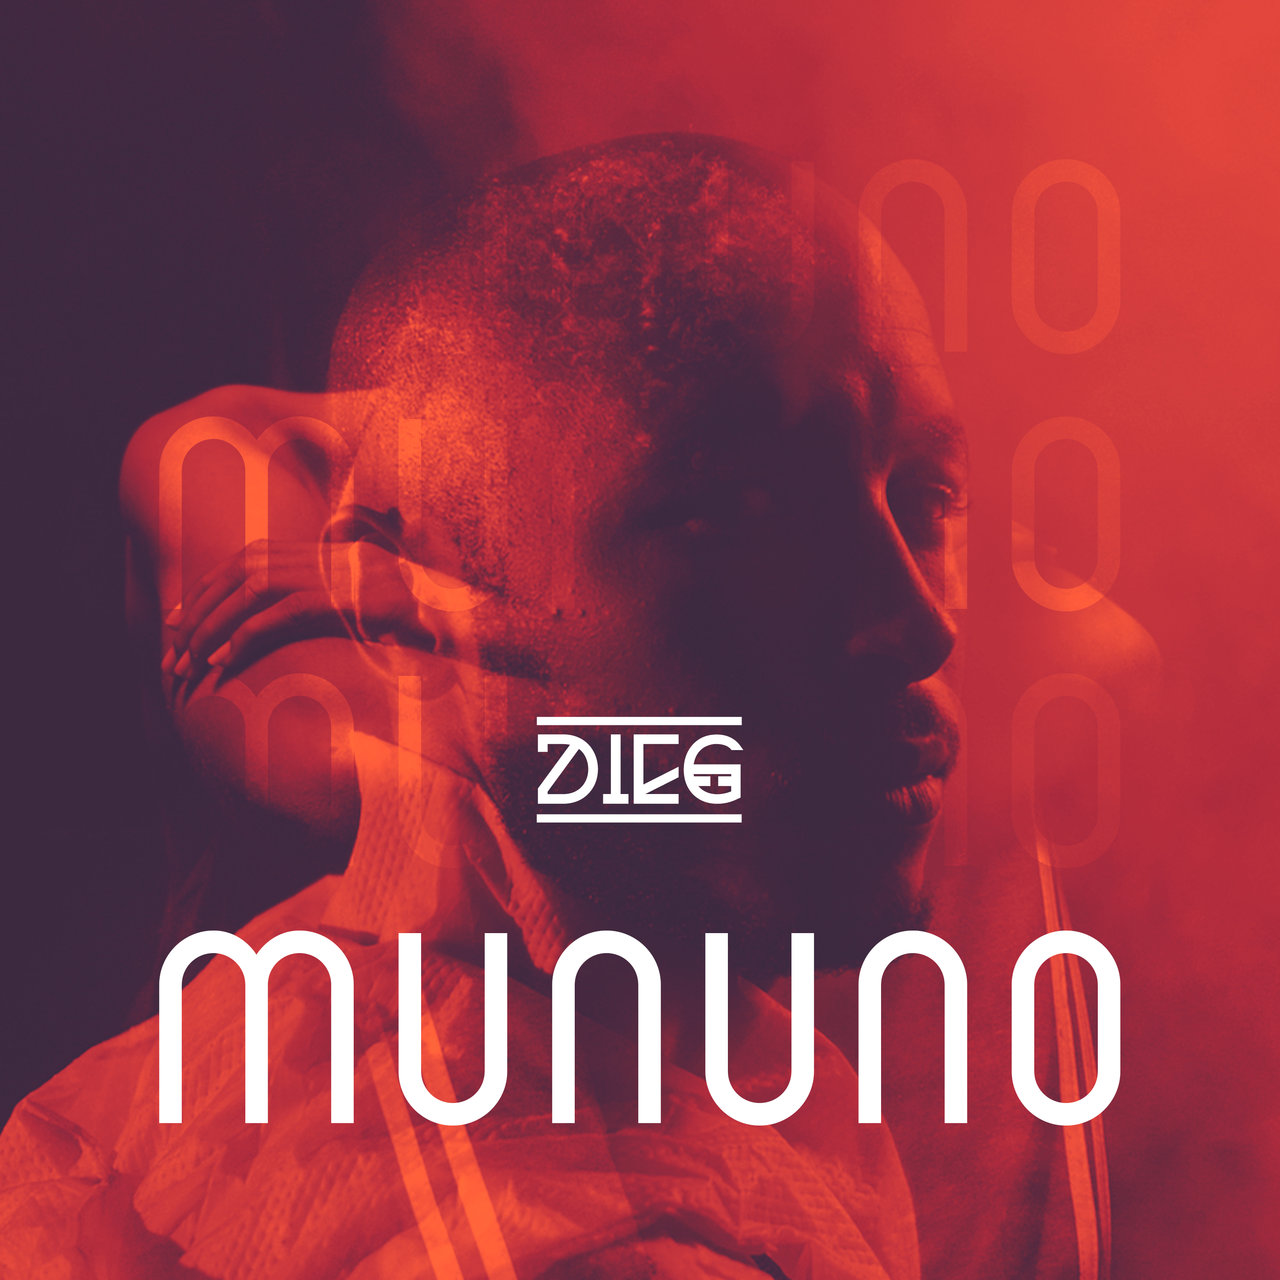 Dieg - Mununo (Cover)